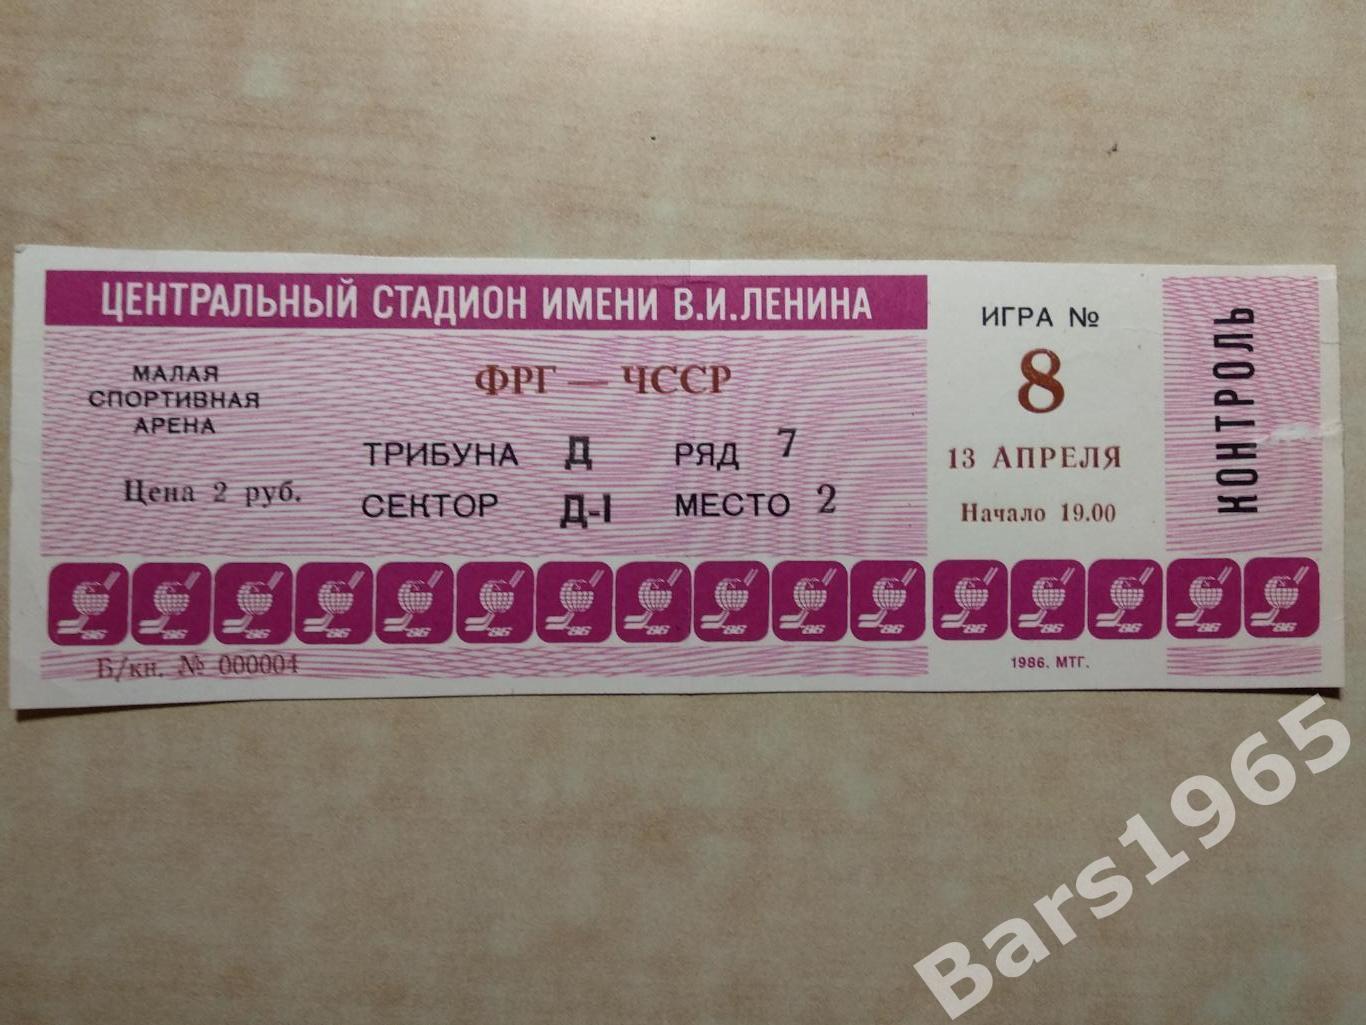 Чемпионат мира и Европы Москва 1986 ФРГ - ЧССР Билет